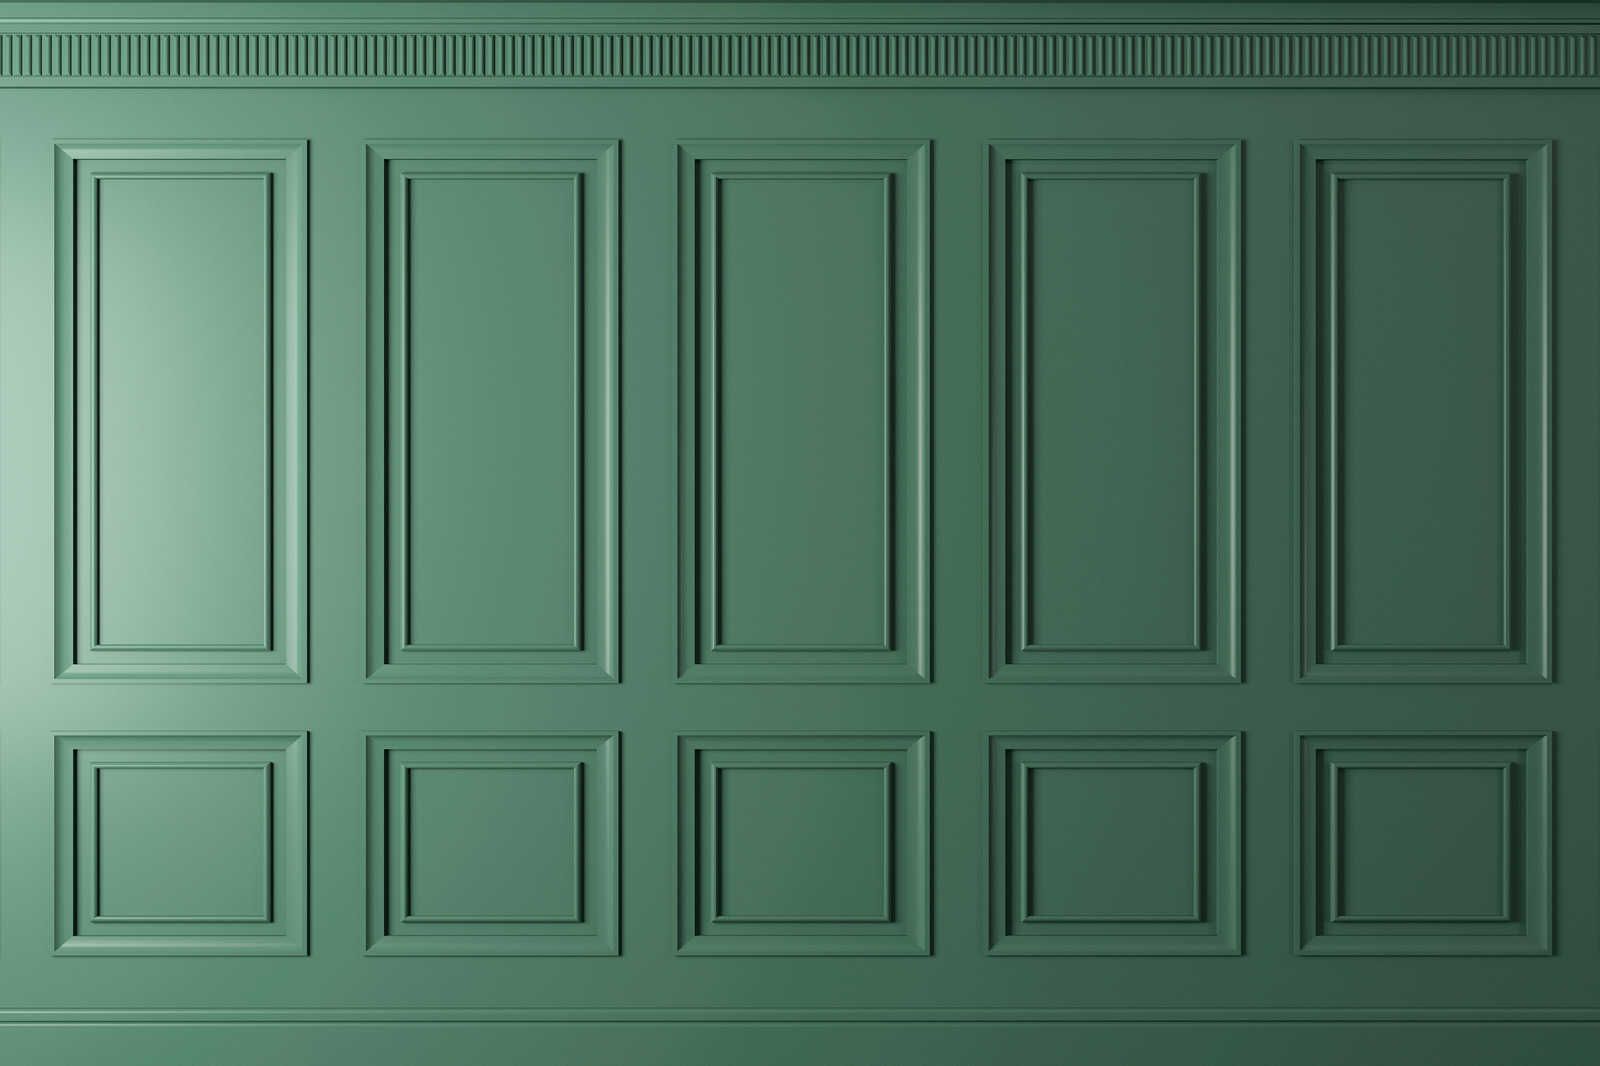             Kensington 1 - 3D Leinwandbild Holzvertäfelung Tannengrün – 0,90 m x 0,60 m
        